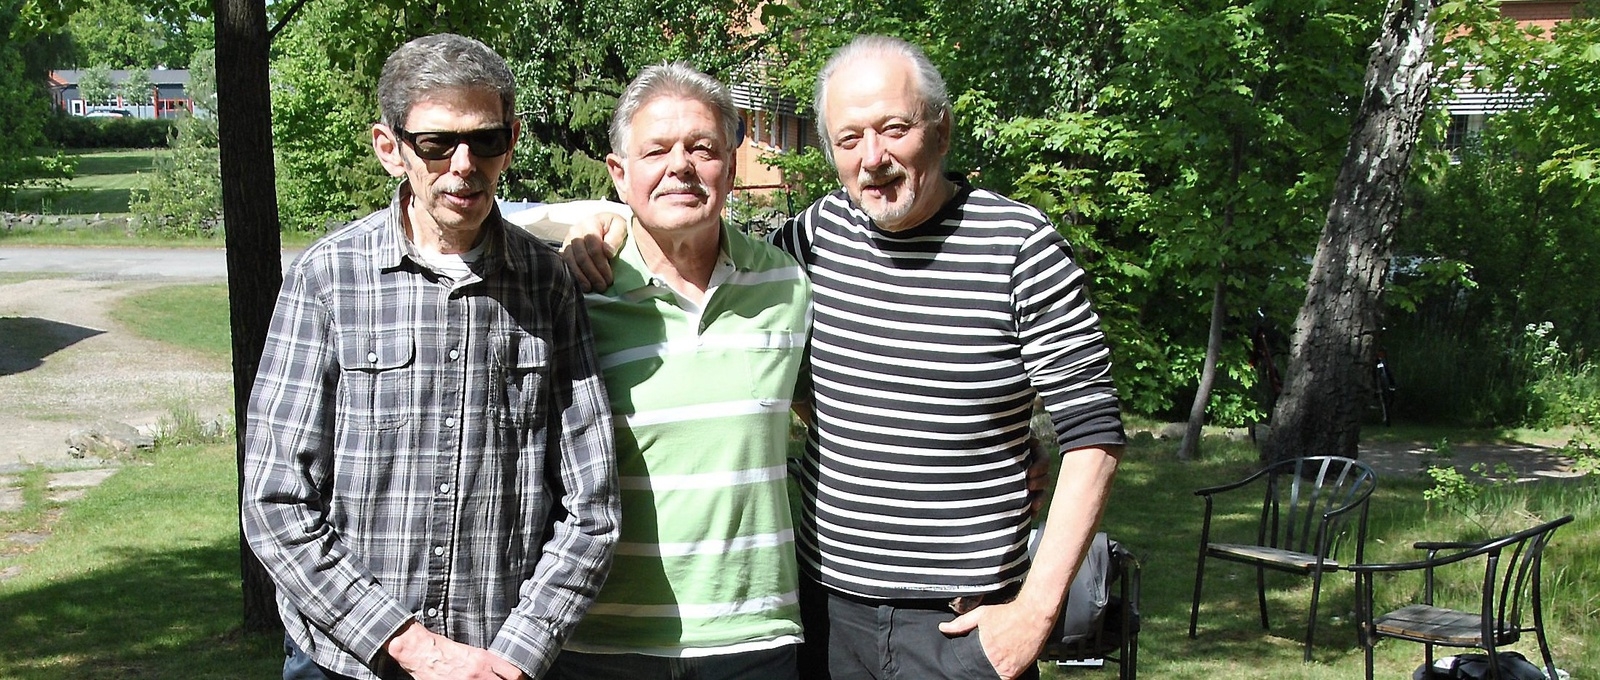 Målarbröderna Nilsson sadlade om i början på 80-talet och alla tre började istället jobba inom omsorgen. FOTO: MARIE STRÖMBERG ANDERSSON